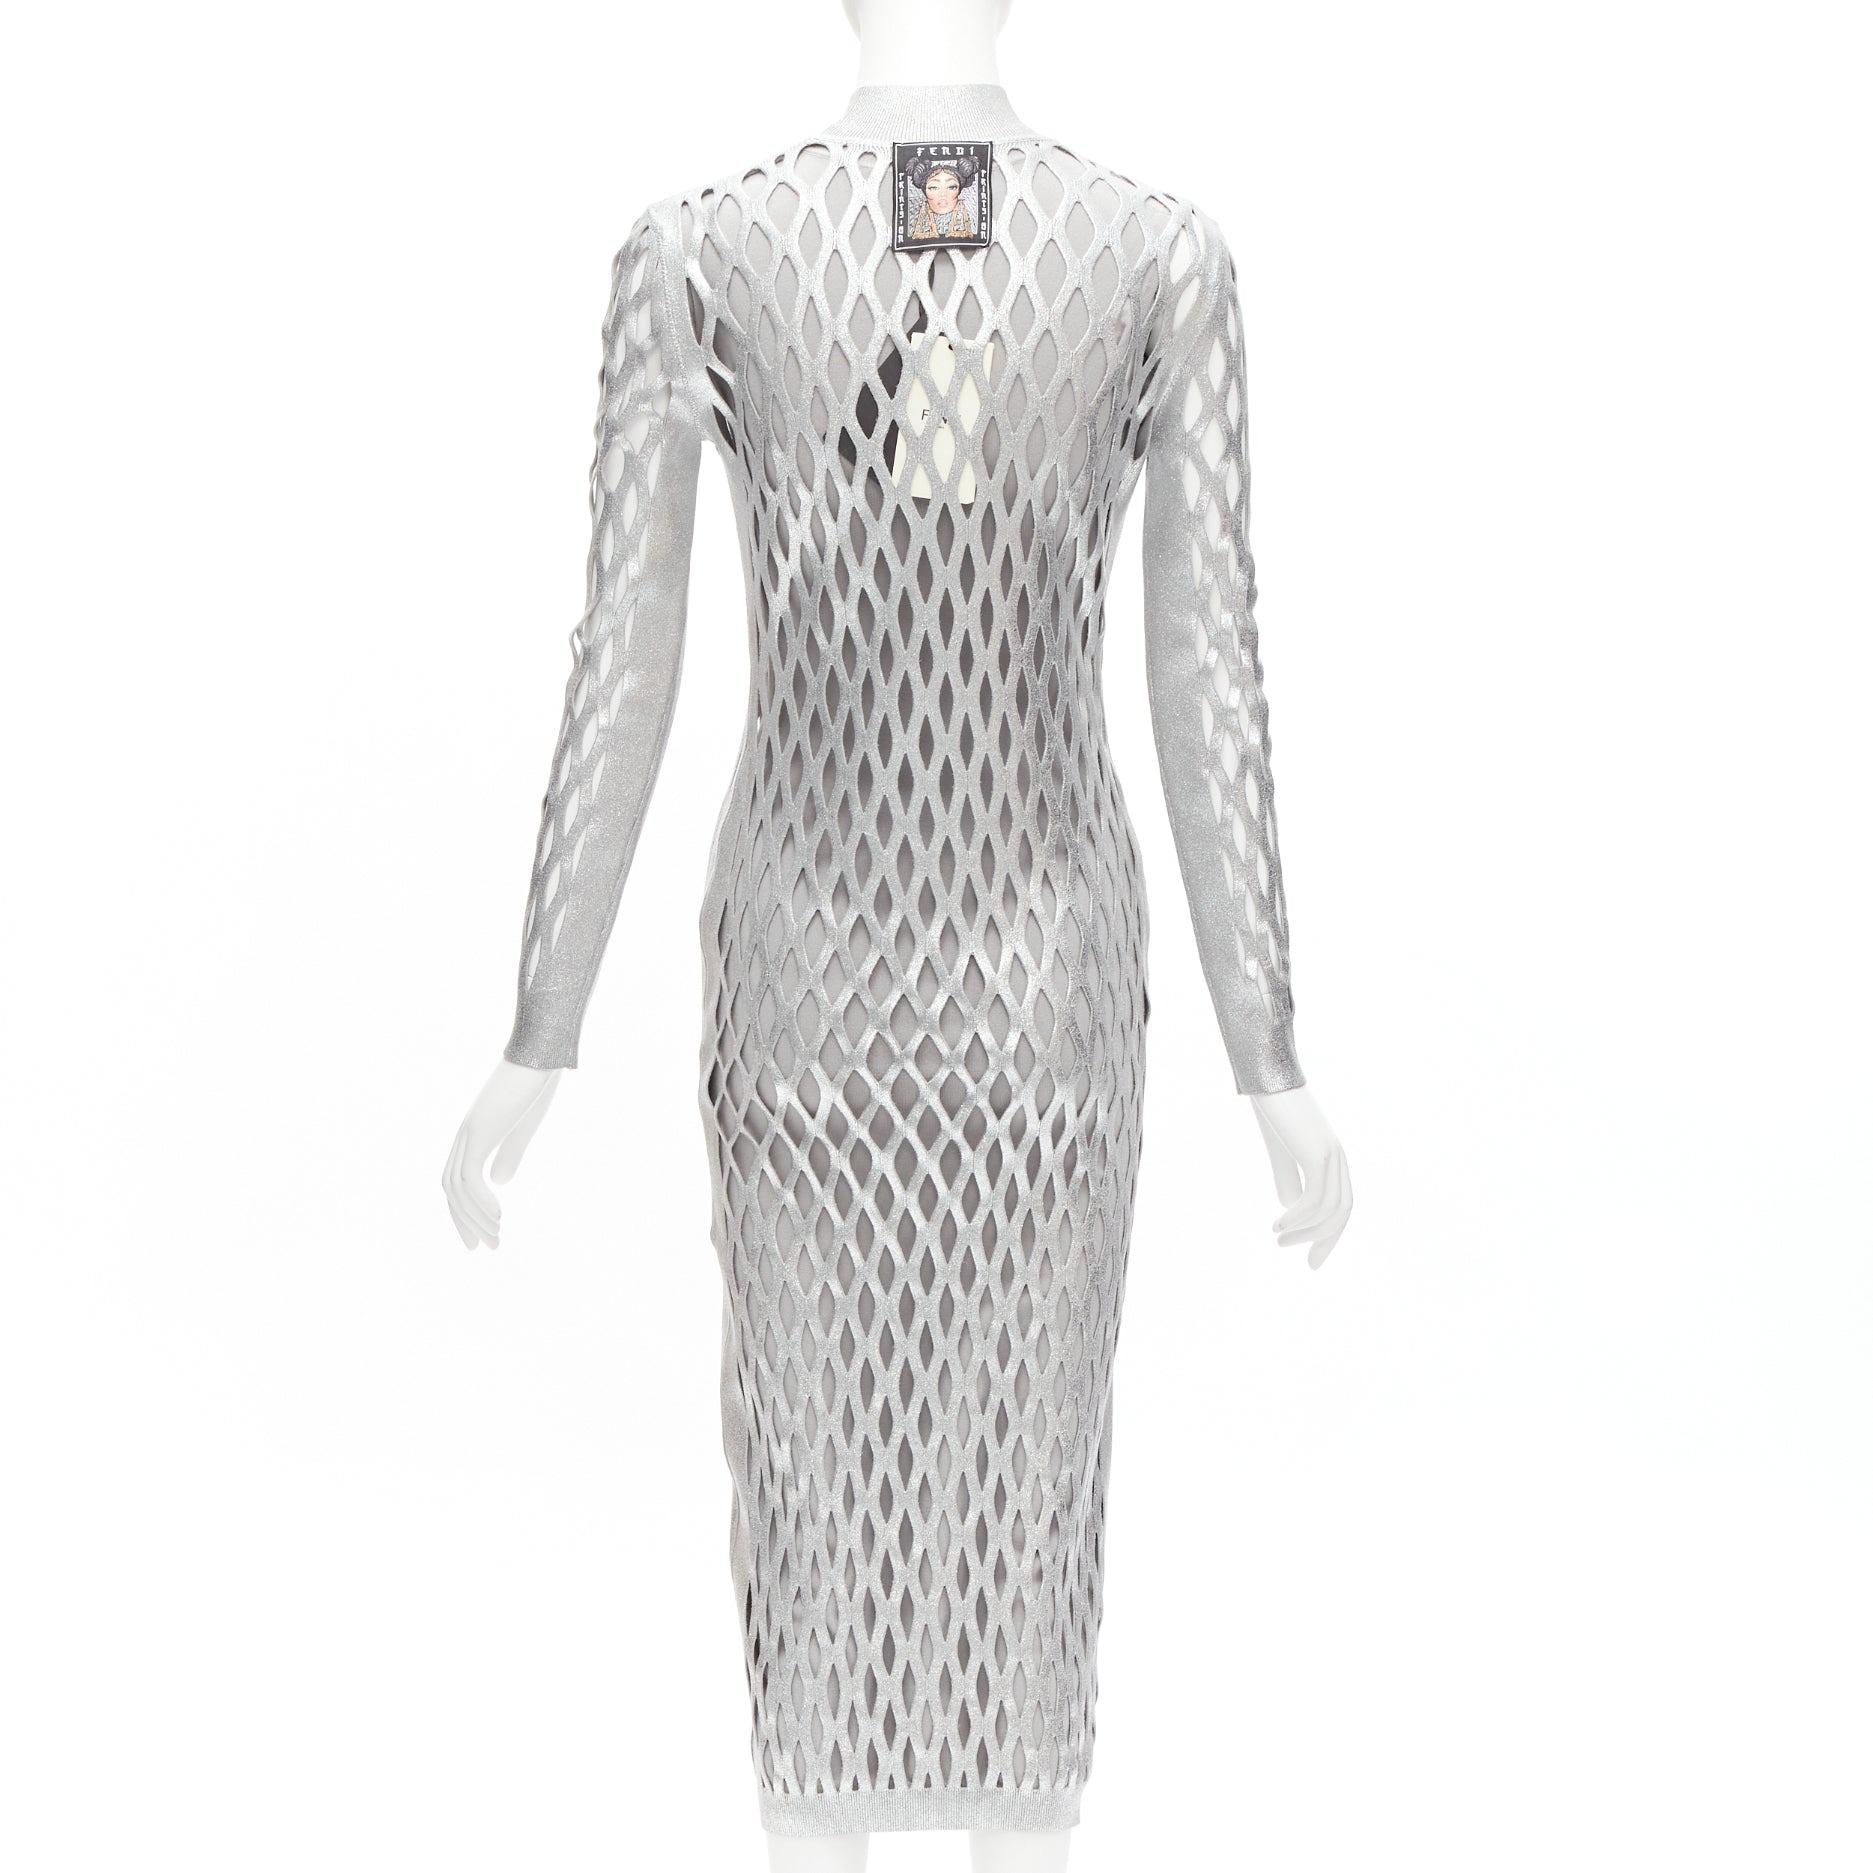 Women's new FENDI Nicki Minaj 2019 Runway Abito silver net cut out lined dress IT42 M For Sale